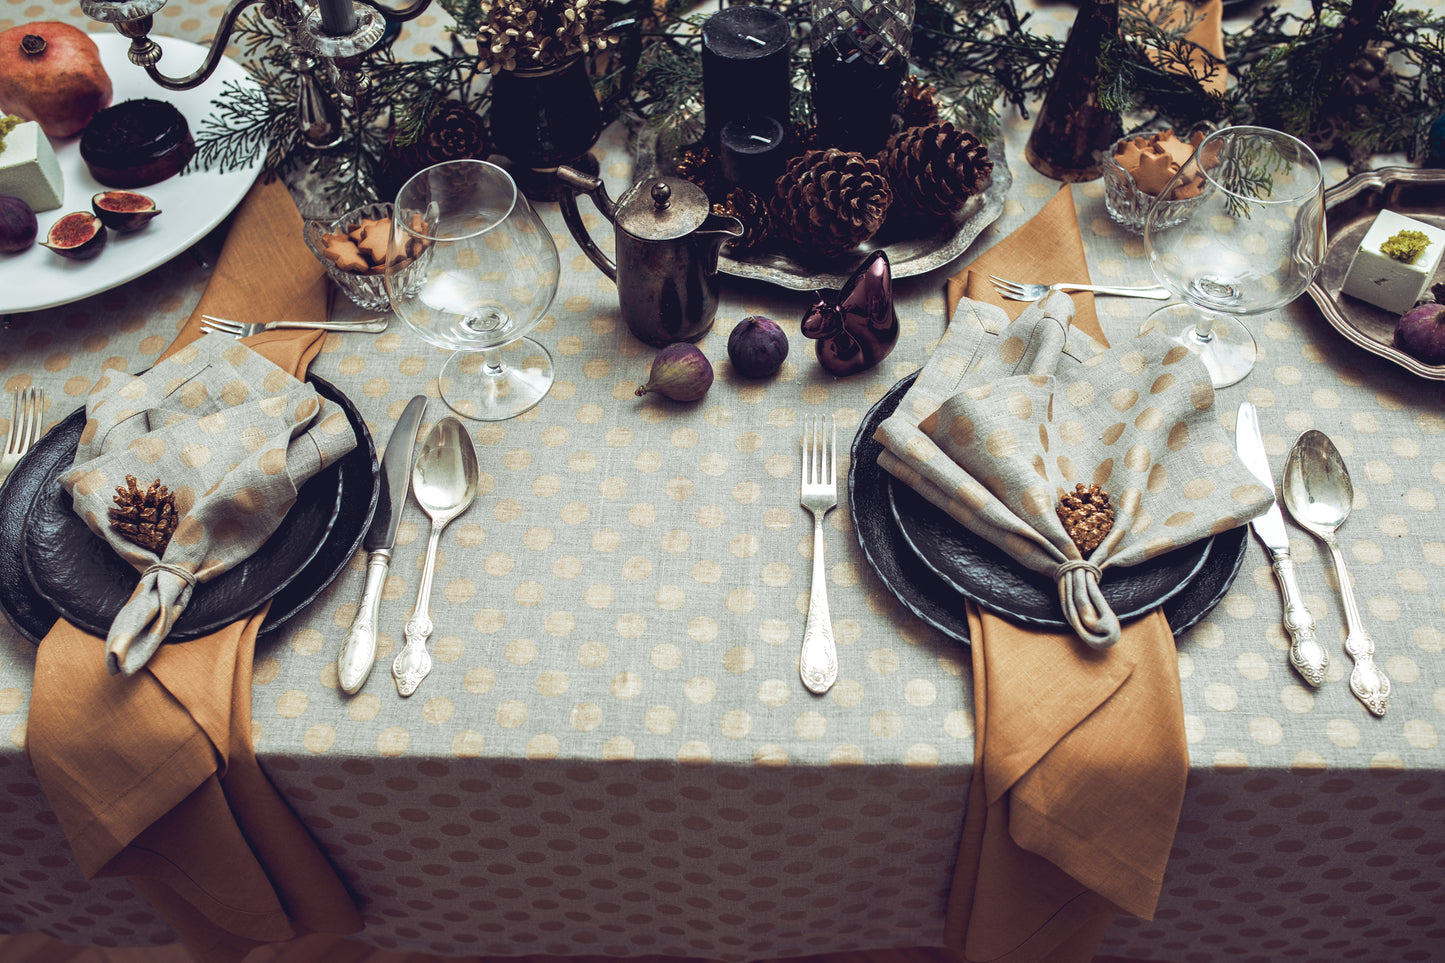 Linen table set for Christmas